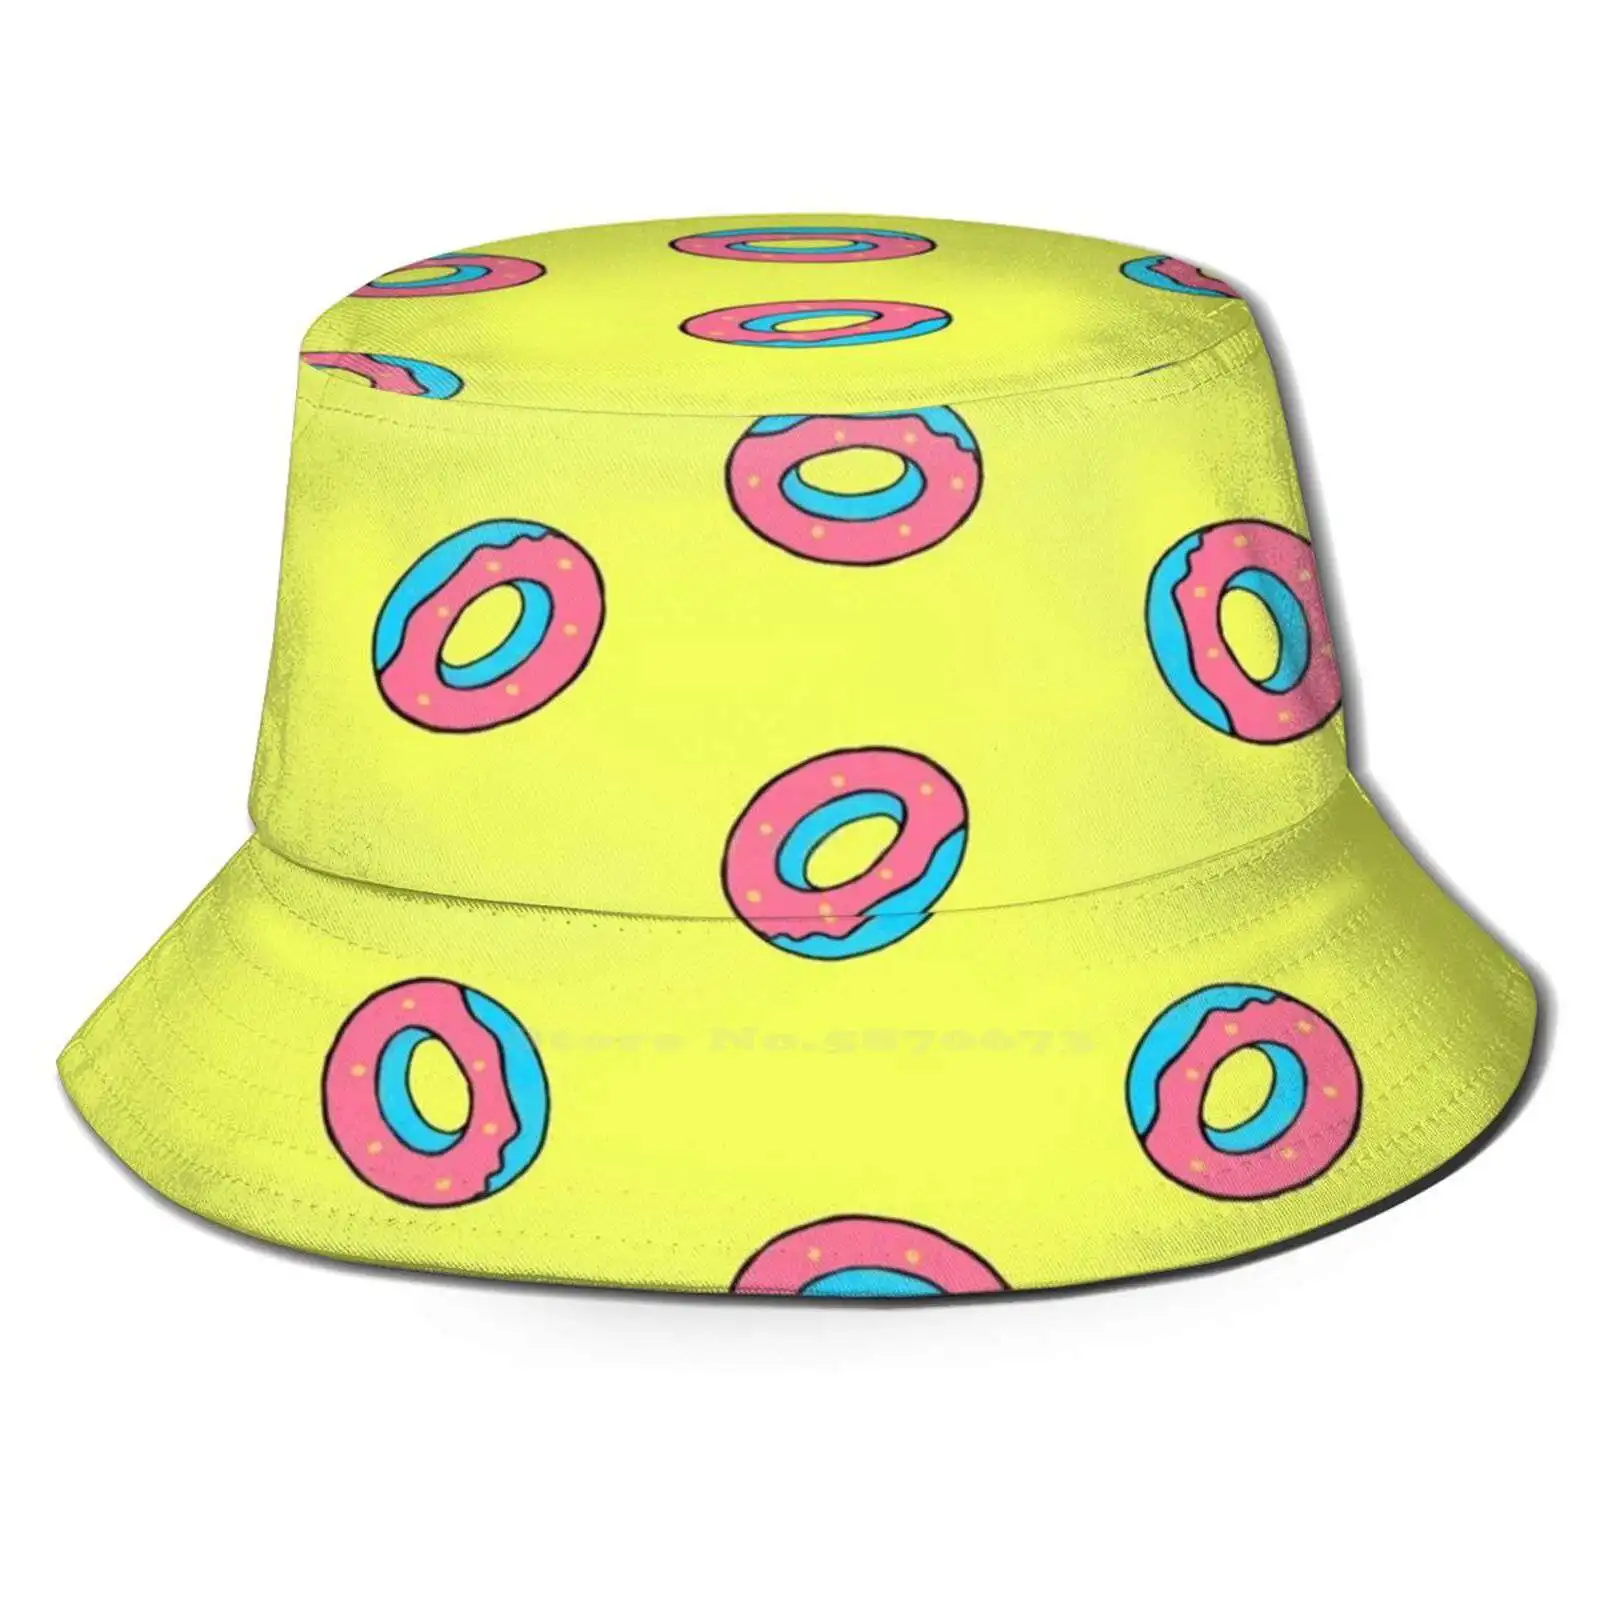 Got7 Donut Design Unisex Summer Outdoor Sunscreen Hat Cap Got7 Bambam Mark Jackson Jackson Wang Markson Youngjae Jb Just Right